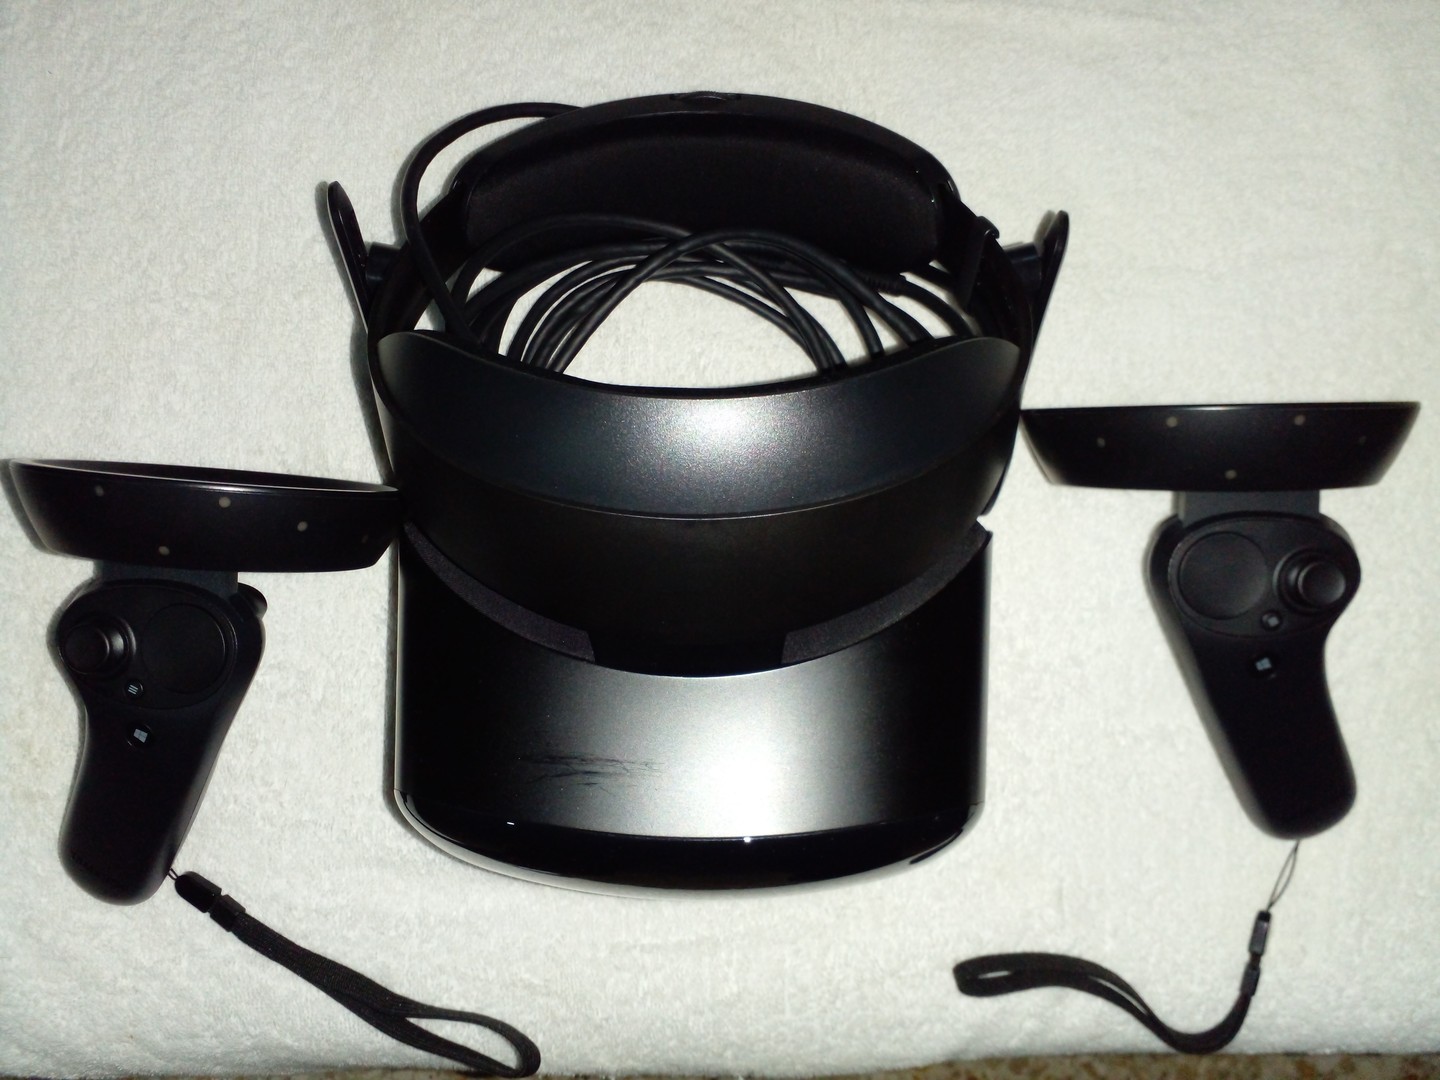 consolas y videojuegos - Casco De Realidad Virtual (VR HeadSet) Samsung odyssey+ 7